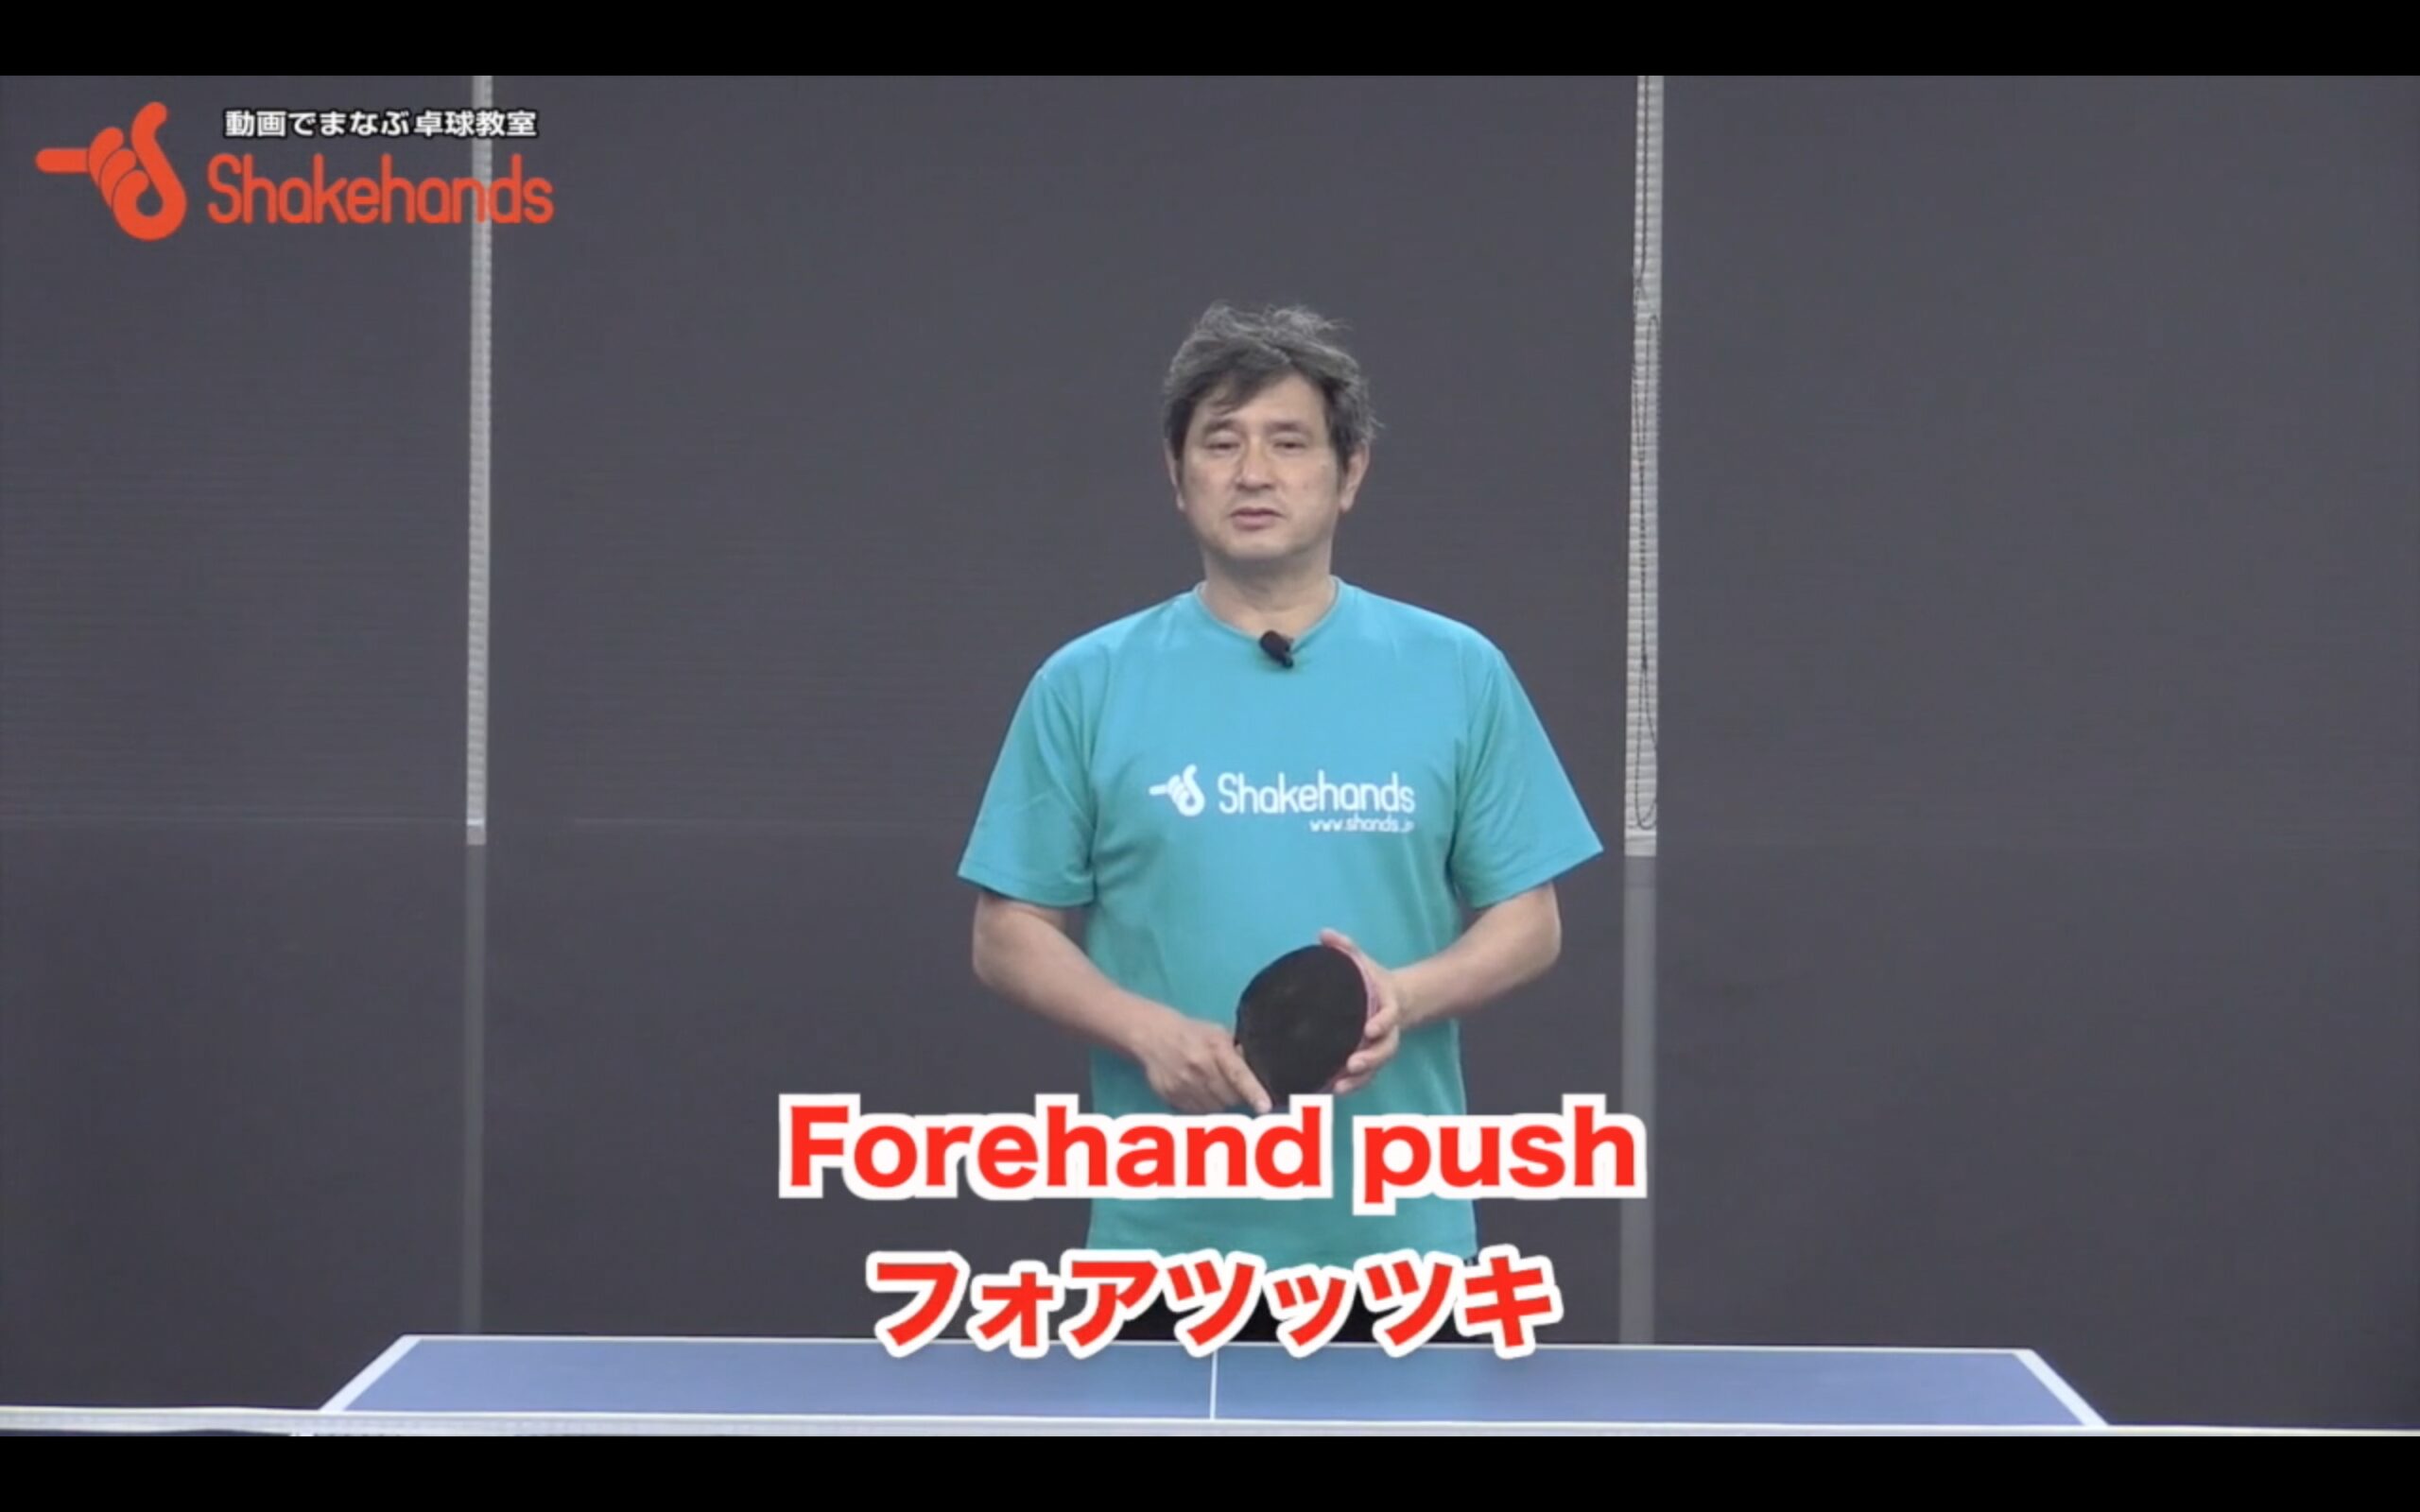 Forehand push